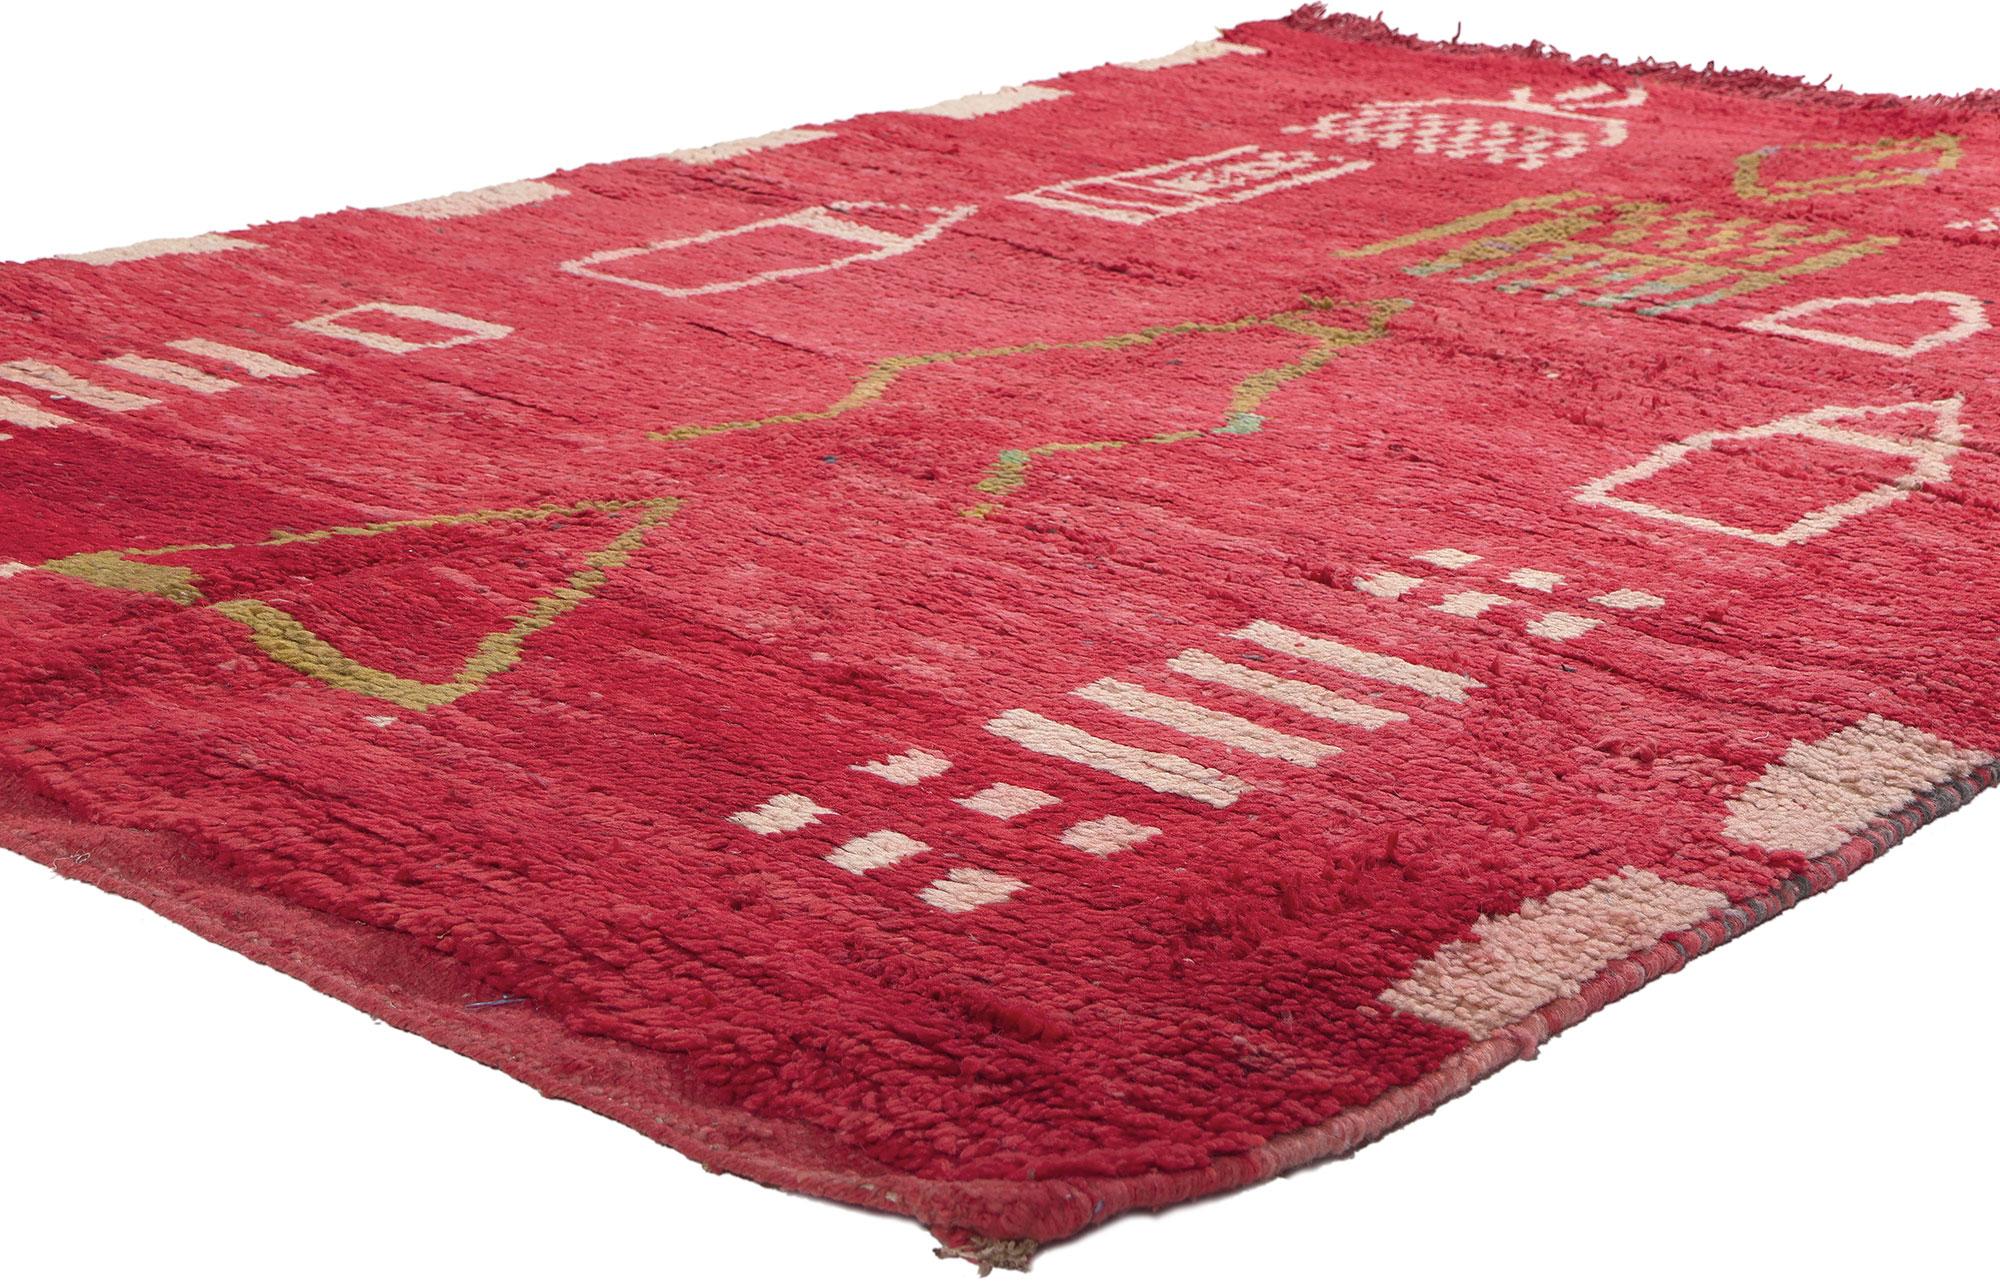 20265 Vintage Rot Boujad Marokkanischer Teppich, 05'03 x 07'08. Die Boujad-Teppiche stammen aus der pulsierenden Stadt Boujad in der Region Khouribga, einem historischen Wallfahrtsort und geschäftigen Handelszentrum an der Karawanenroute zwischen